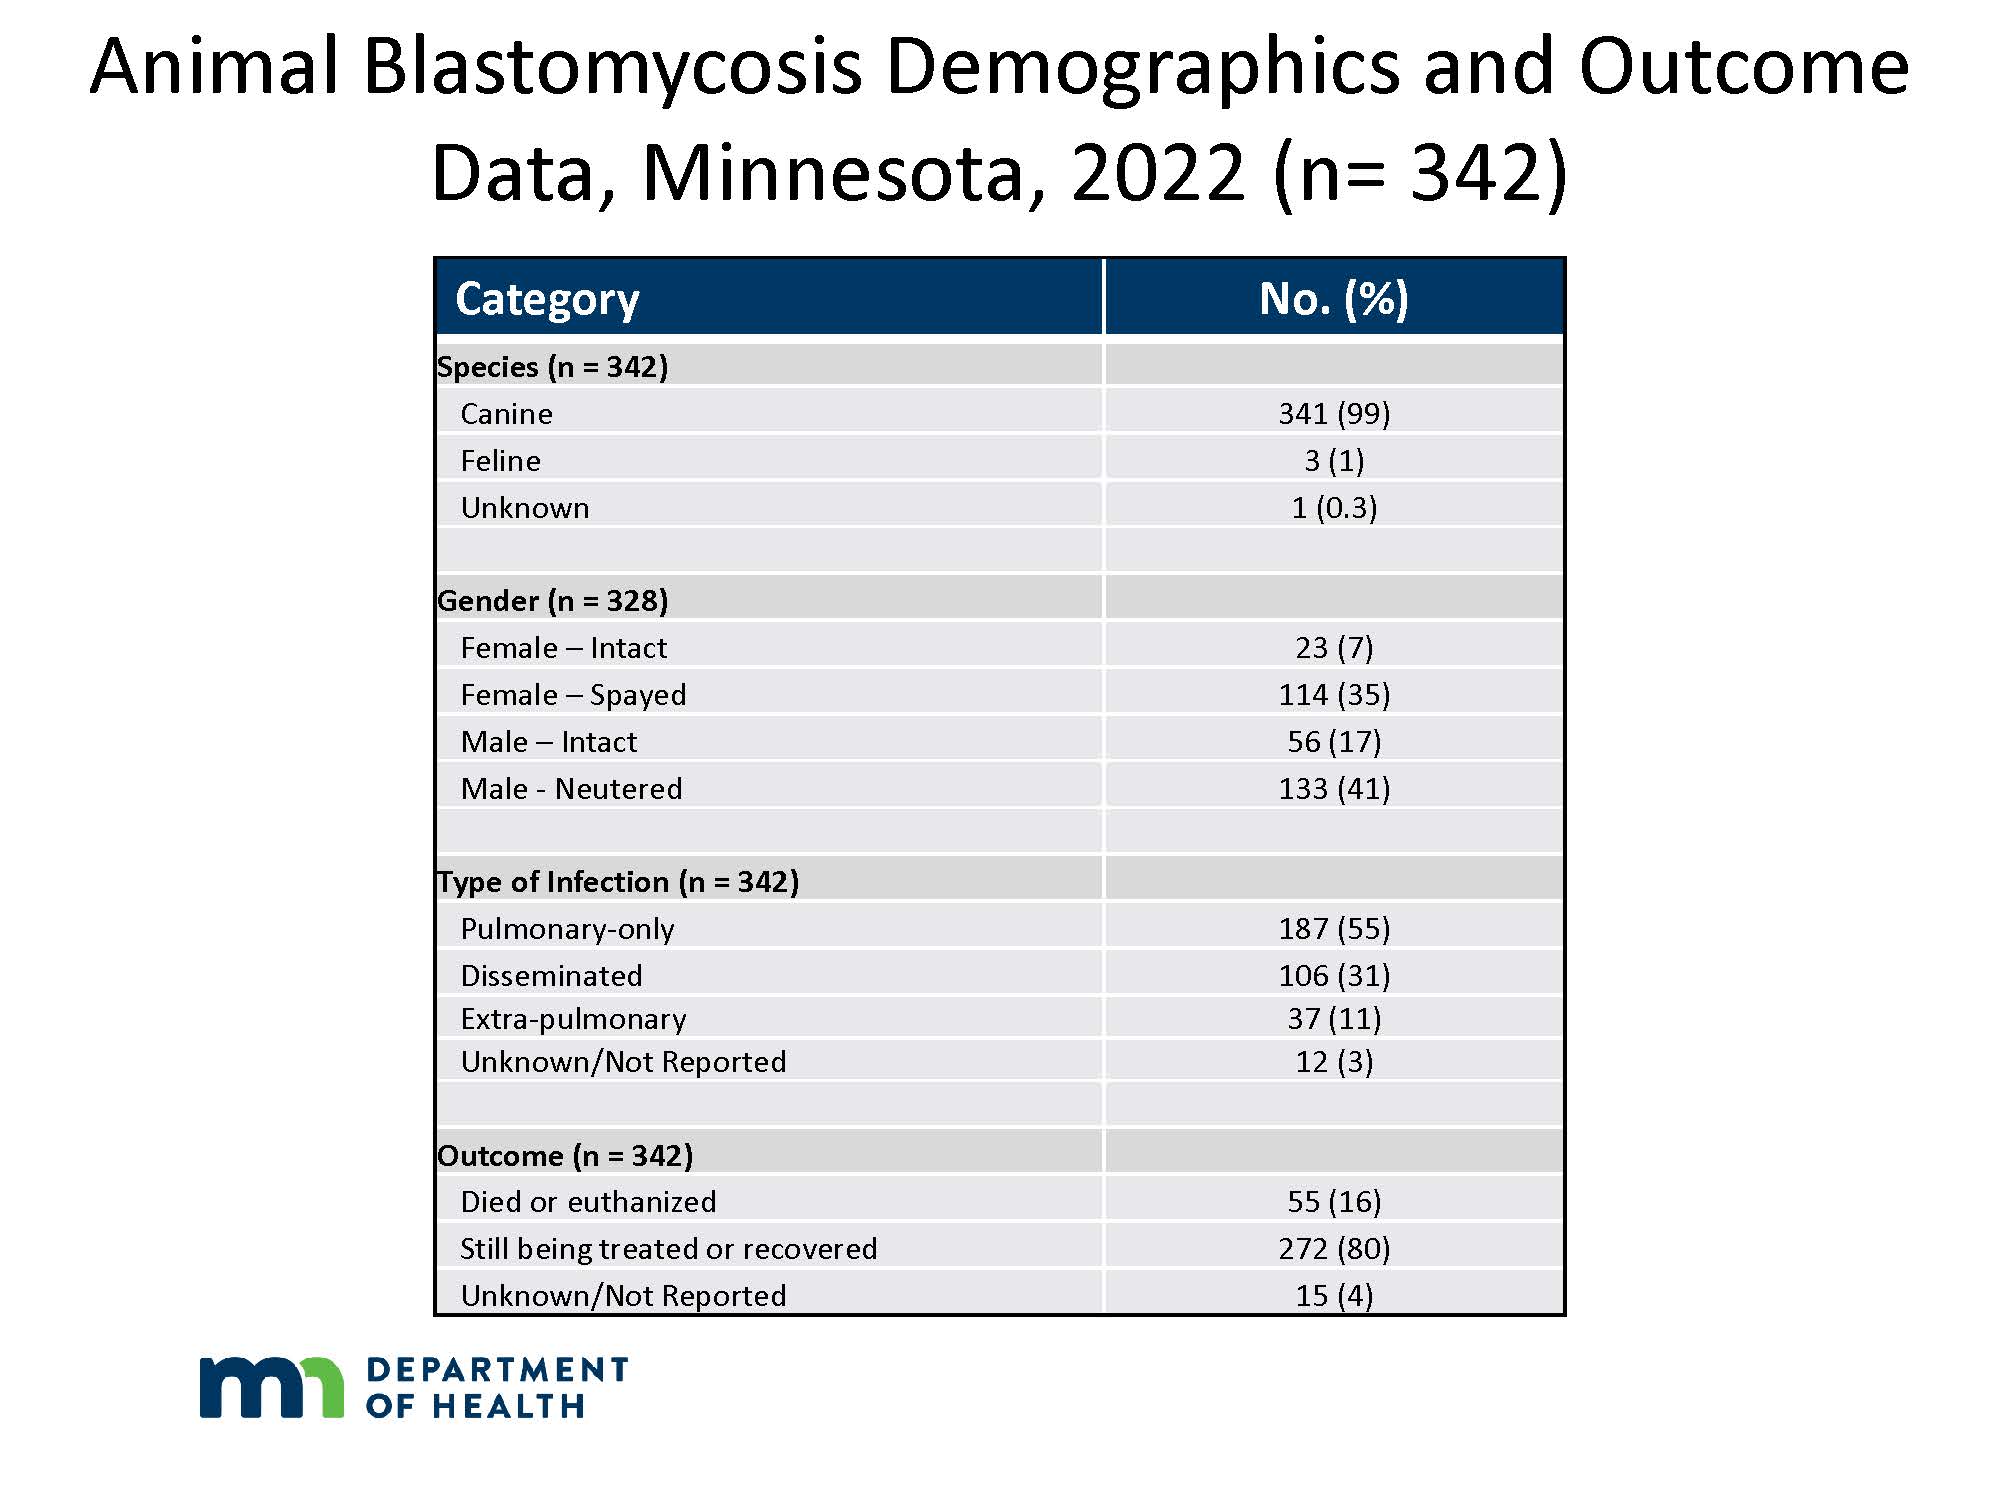 Animal Blastomycosis Demographics and Data, Minnesota, 2022